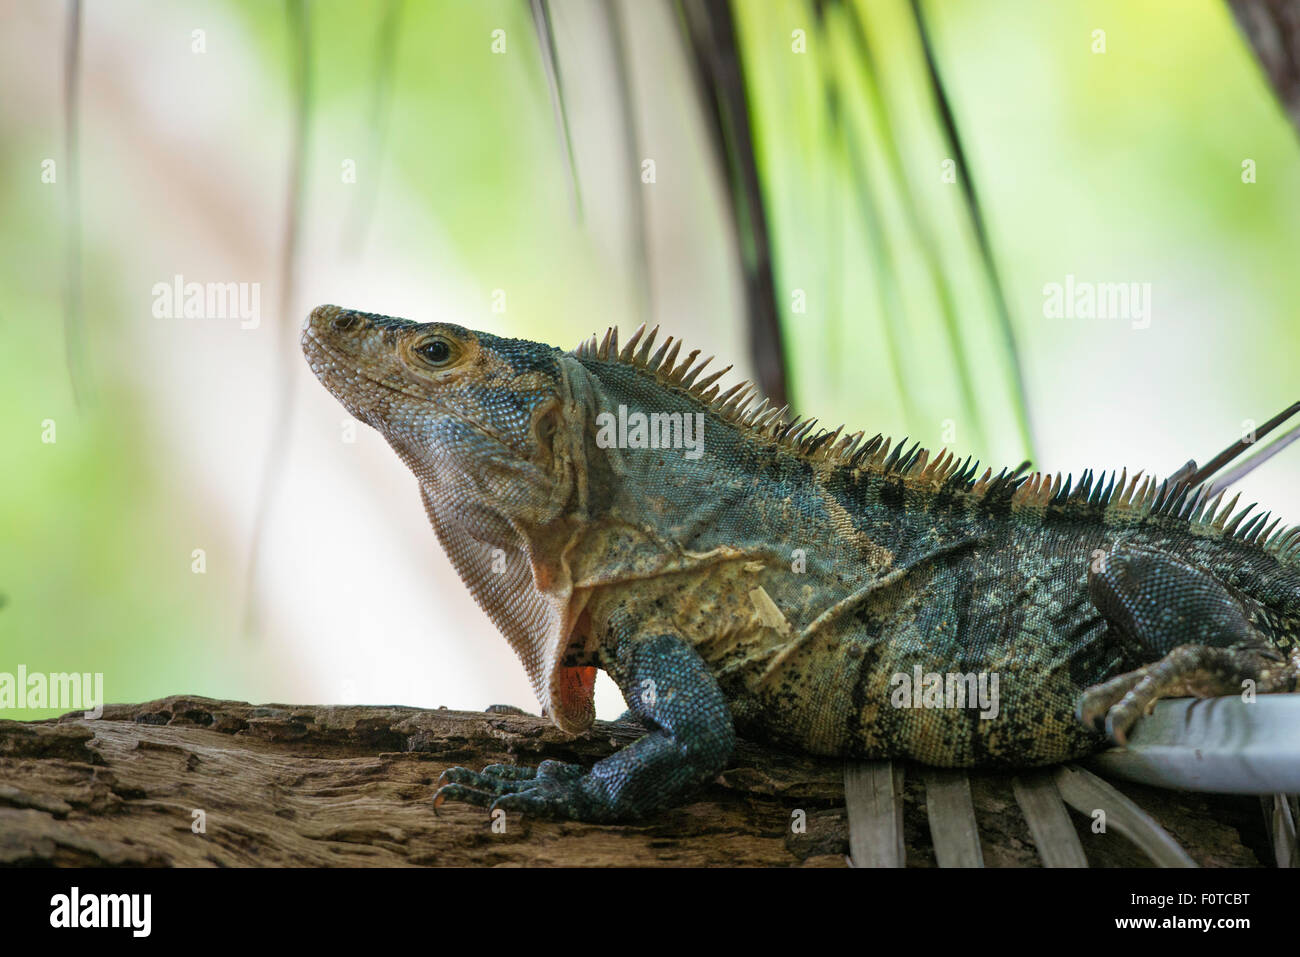 Nero o Ctenosaur Ctenosaura similis in Costa Rica la foresta tropicale, vista di profilo Foto Stock